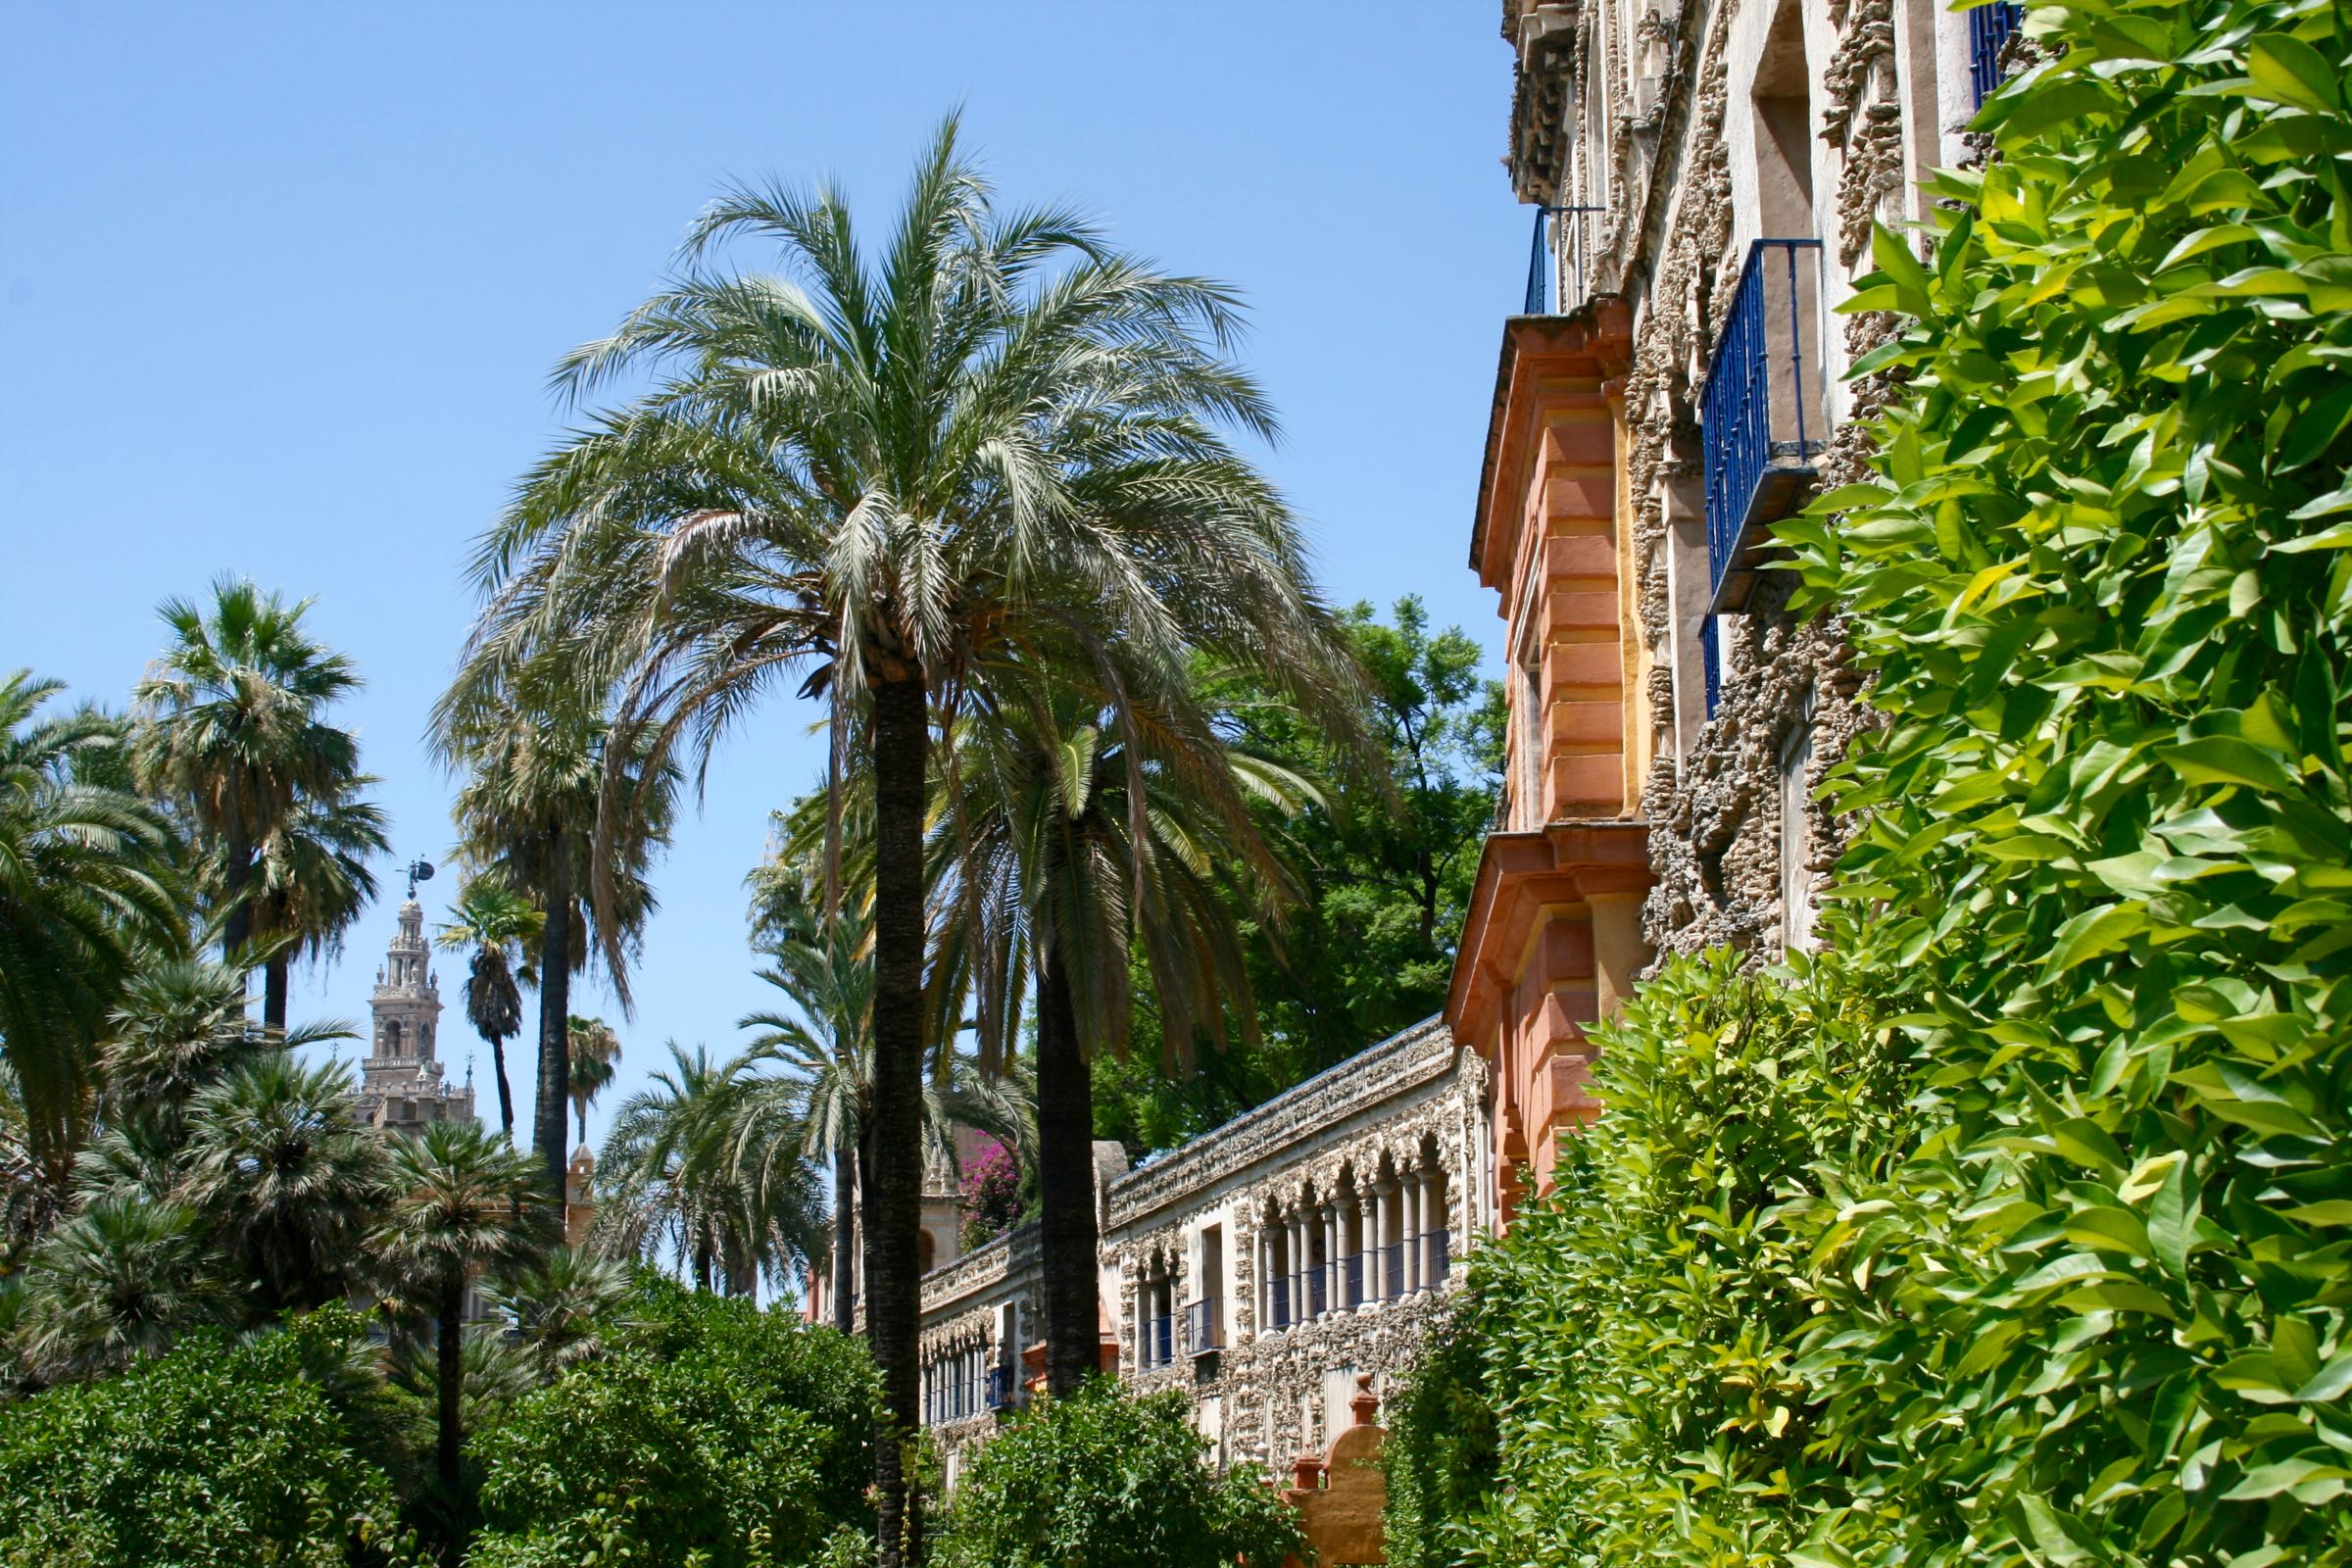 Gartenanlage des Alcázar von Sevilla, Andalusien, Spanien